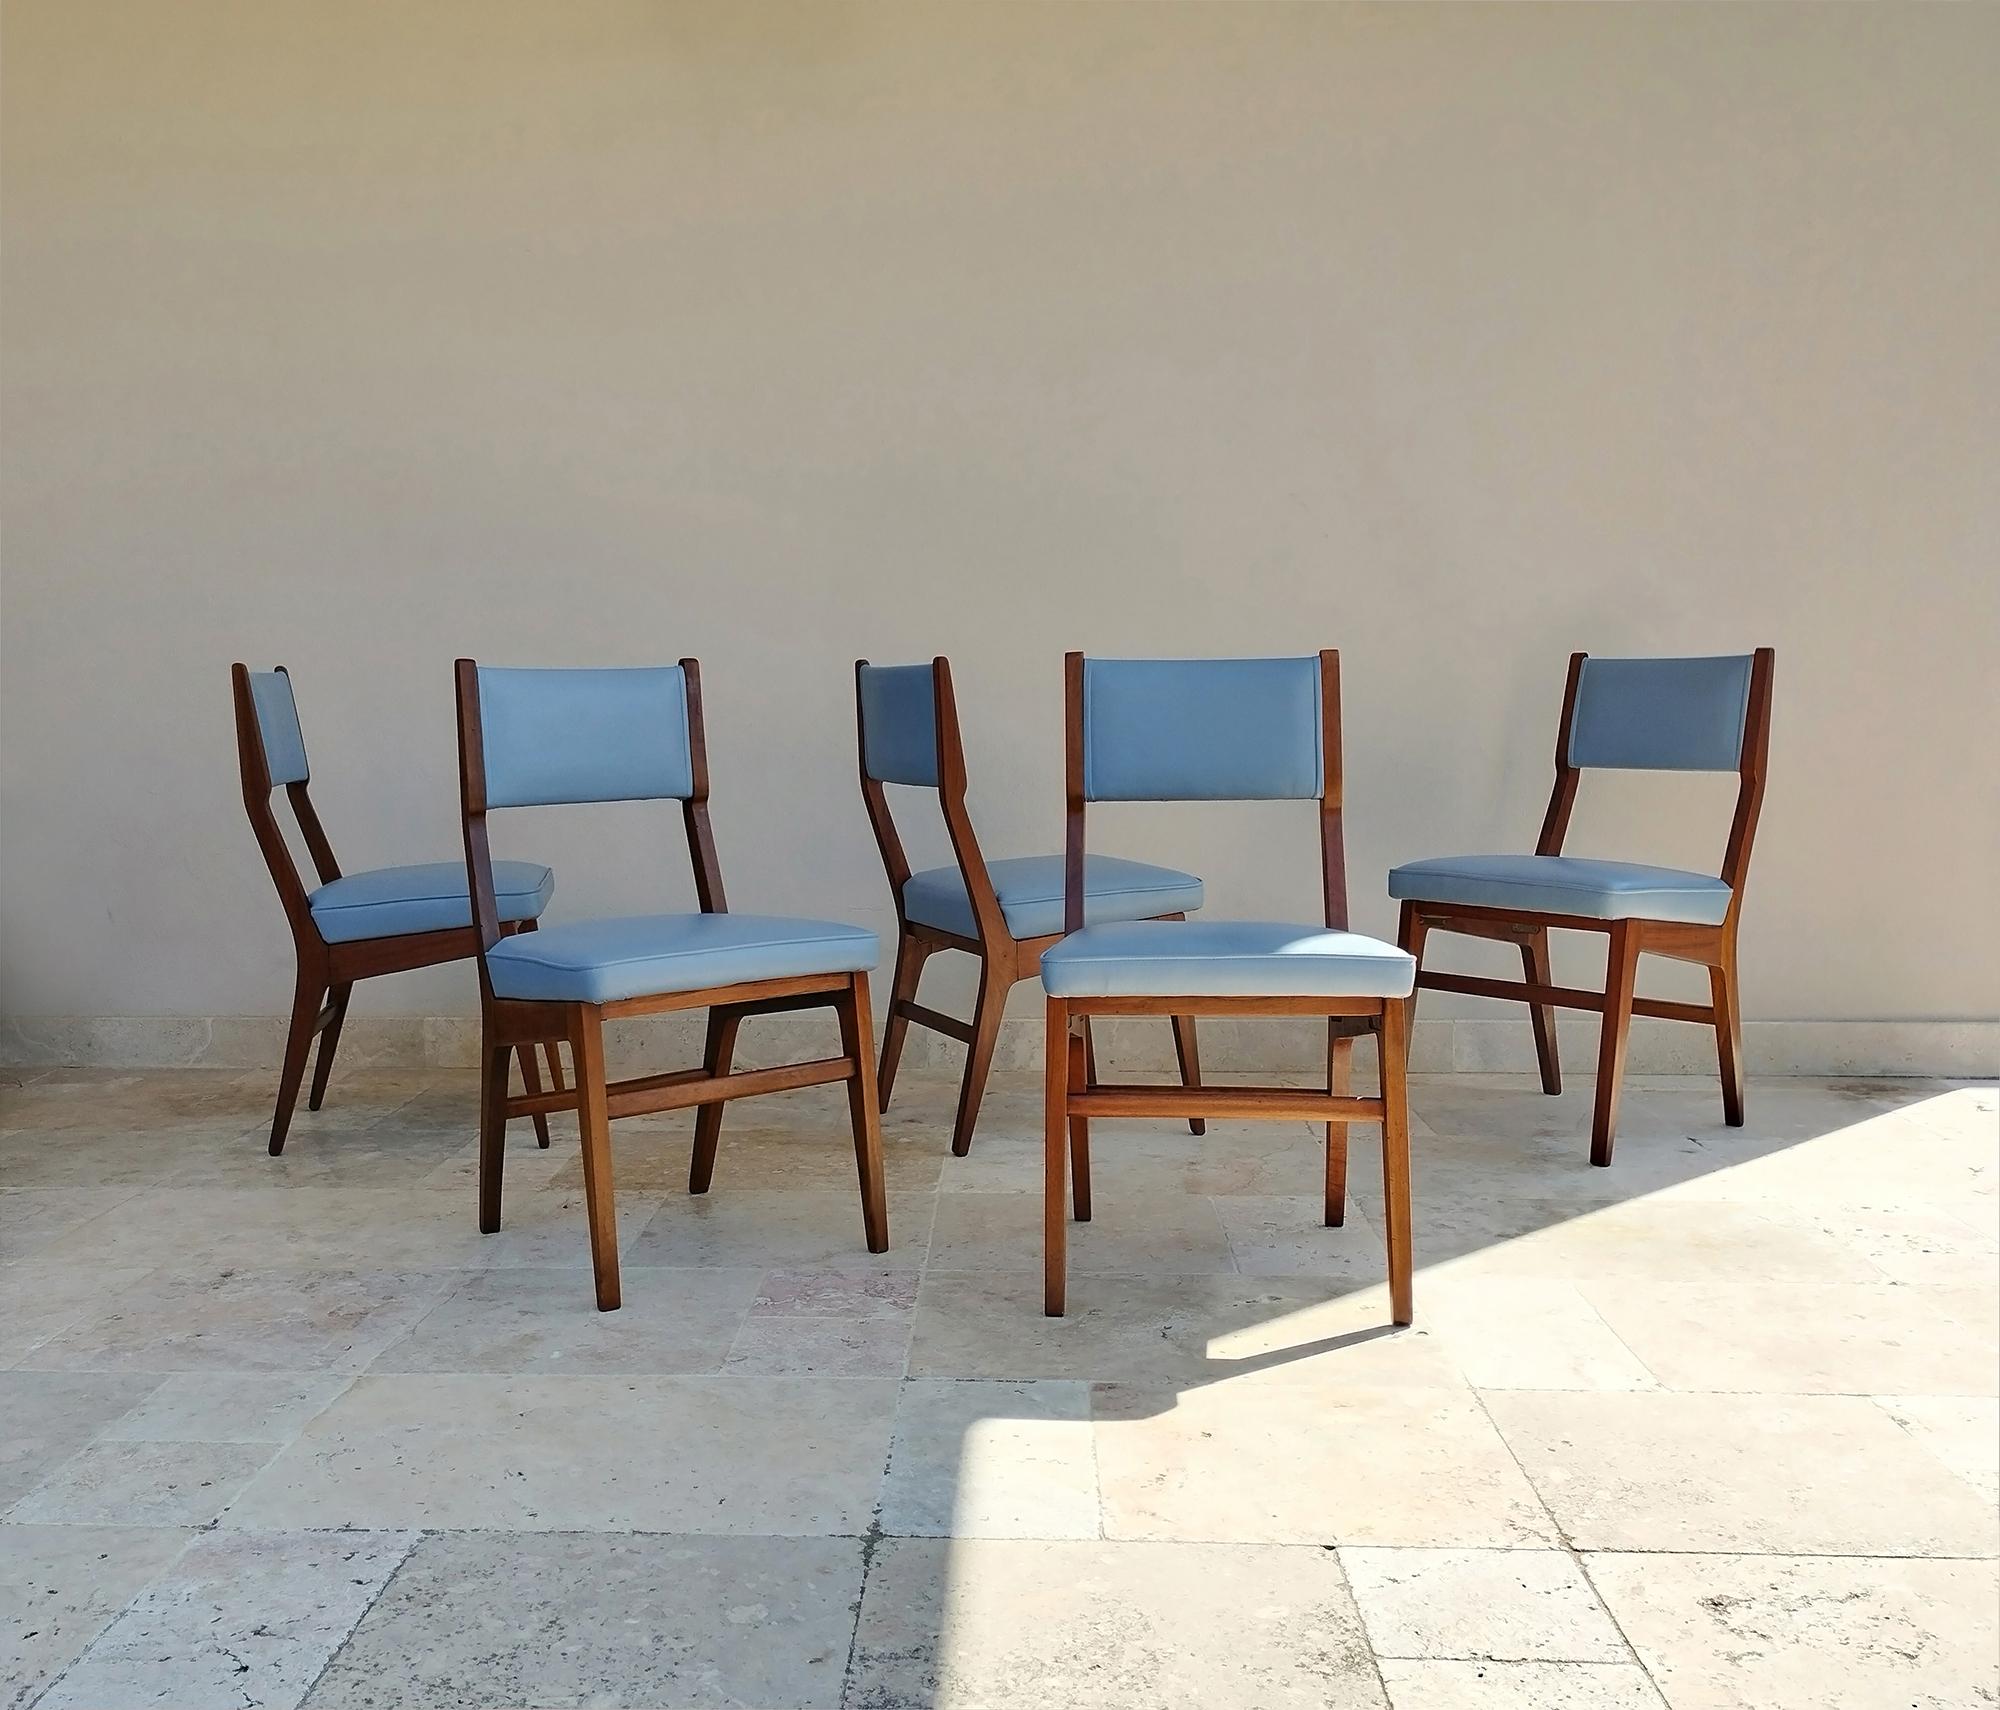 Fünf Stühle mit einem fantastischen Design, die in den 1950er Jahren von dem bekannten italienischen Hersteller ISA Bergamo produziert und Gio Ponti zugeschrieben werden. 
Die Stühle sind in sehr gutem Zustand und wurden vor kurzem mit hochwertigem